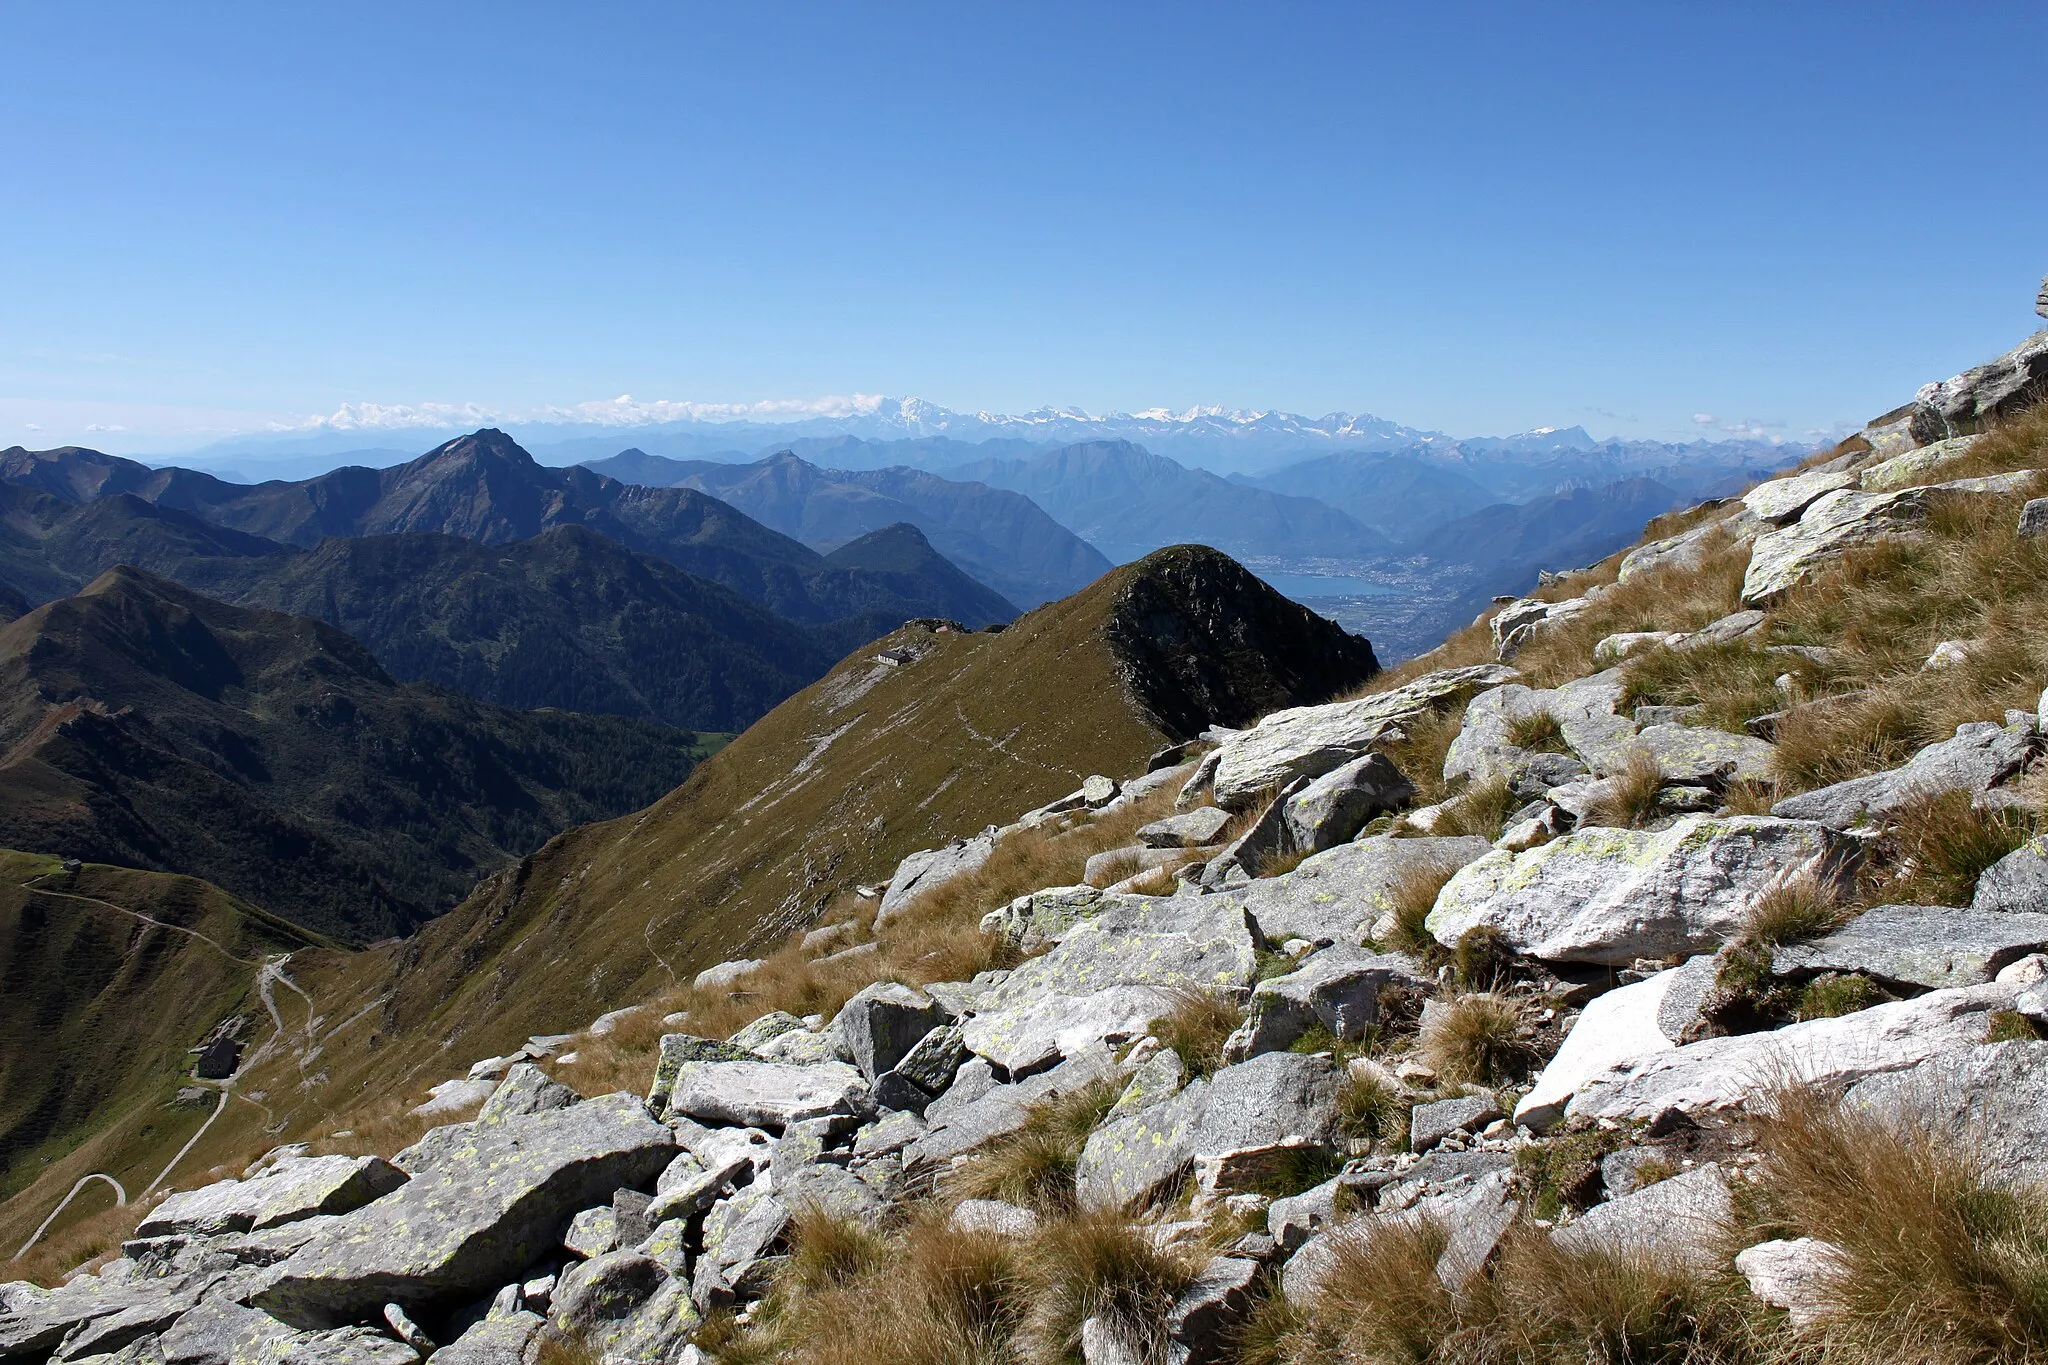 Photo showing: An der Südflanke geht es Aufwärts zum Monte Marmontana ( 2316 m.ü.M.). Der Berg liegt genau im Grenzbereich zwischen der Schweiz und Italien. In der Bildmitte liegt der Cima di Cugn (2180 m.ü.M.) mit dem gleichnamigen Rifugio. Links unten ist der Passo San Jorio (2010 m.ü.M.), Grenzpunkt zwischen Italien und der Schweiz. In der Ferne ist der Lago Maggiore zu sehen.